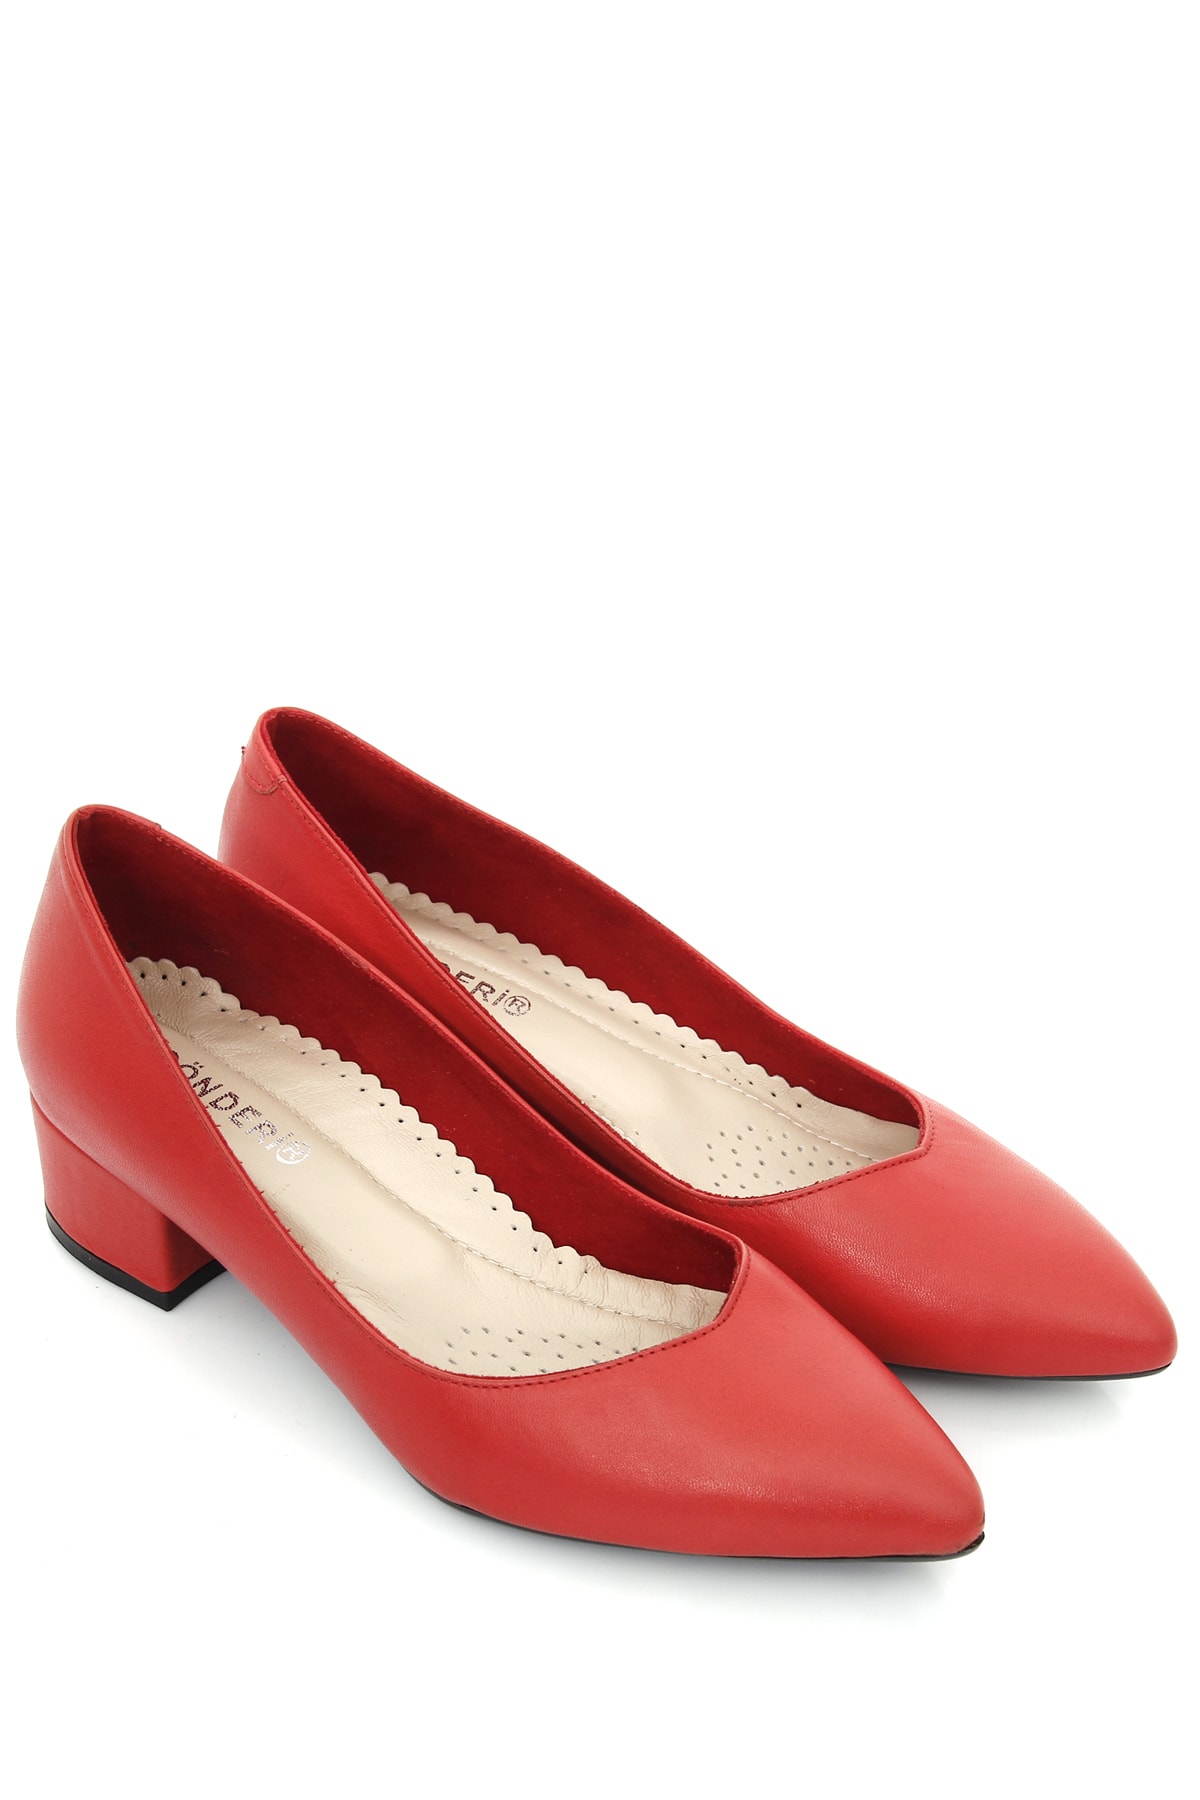 کفش رسمی زنانه قرمز مارک gonderir GDZA13425172